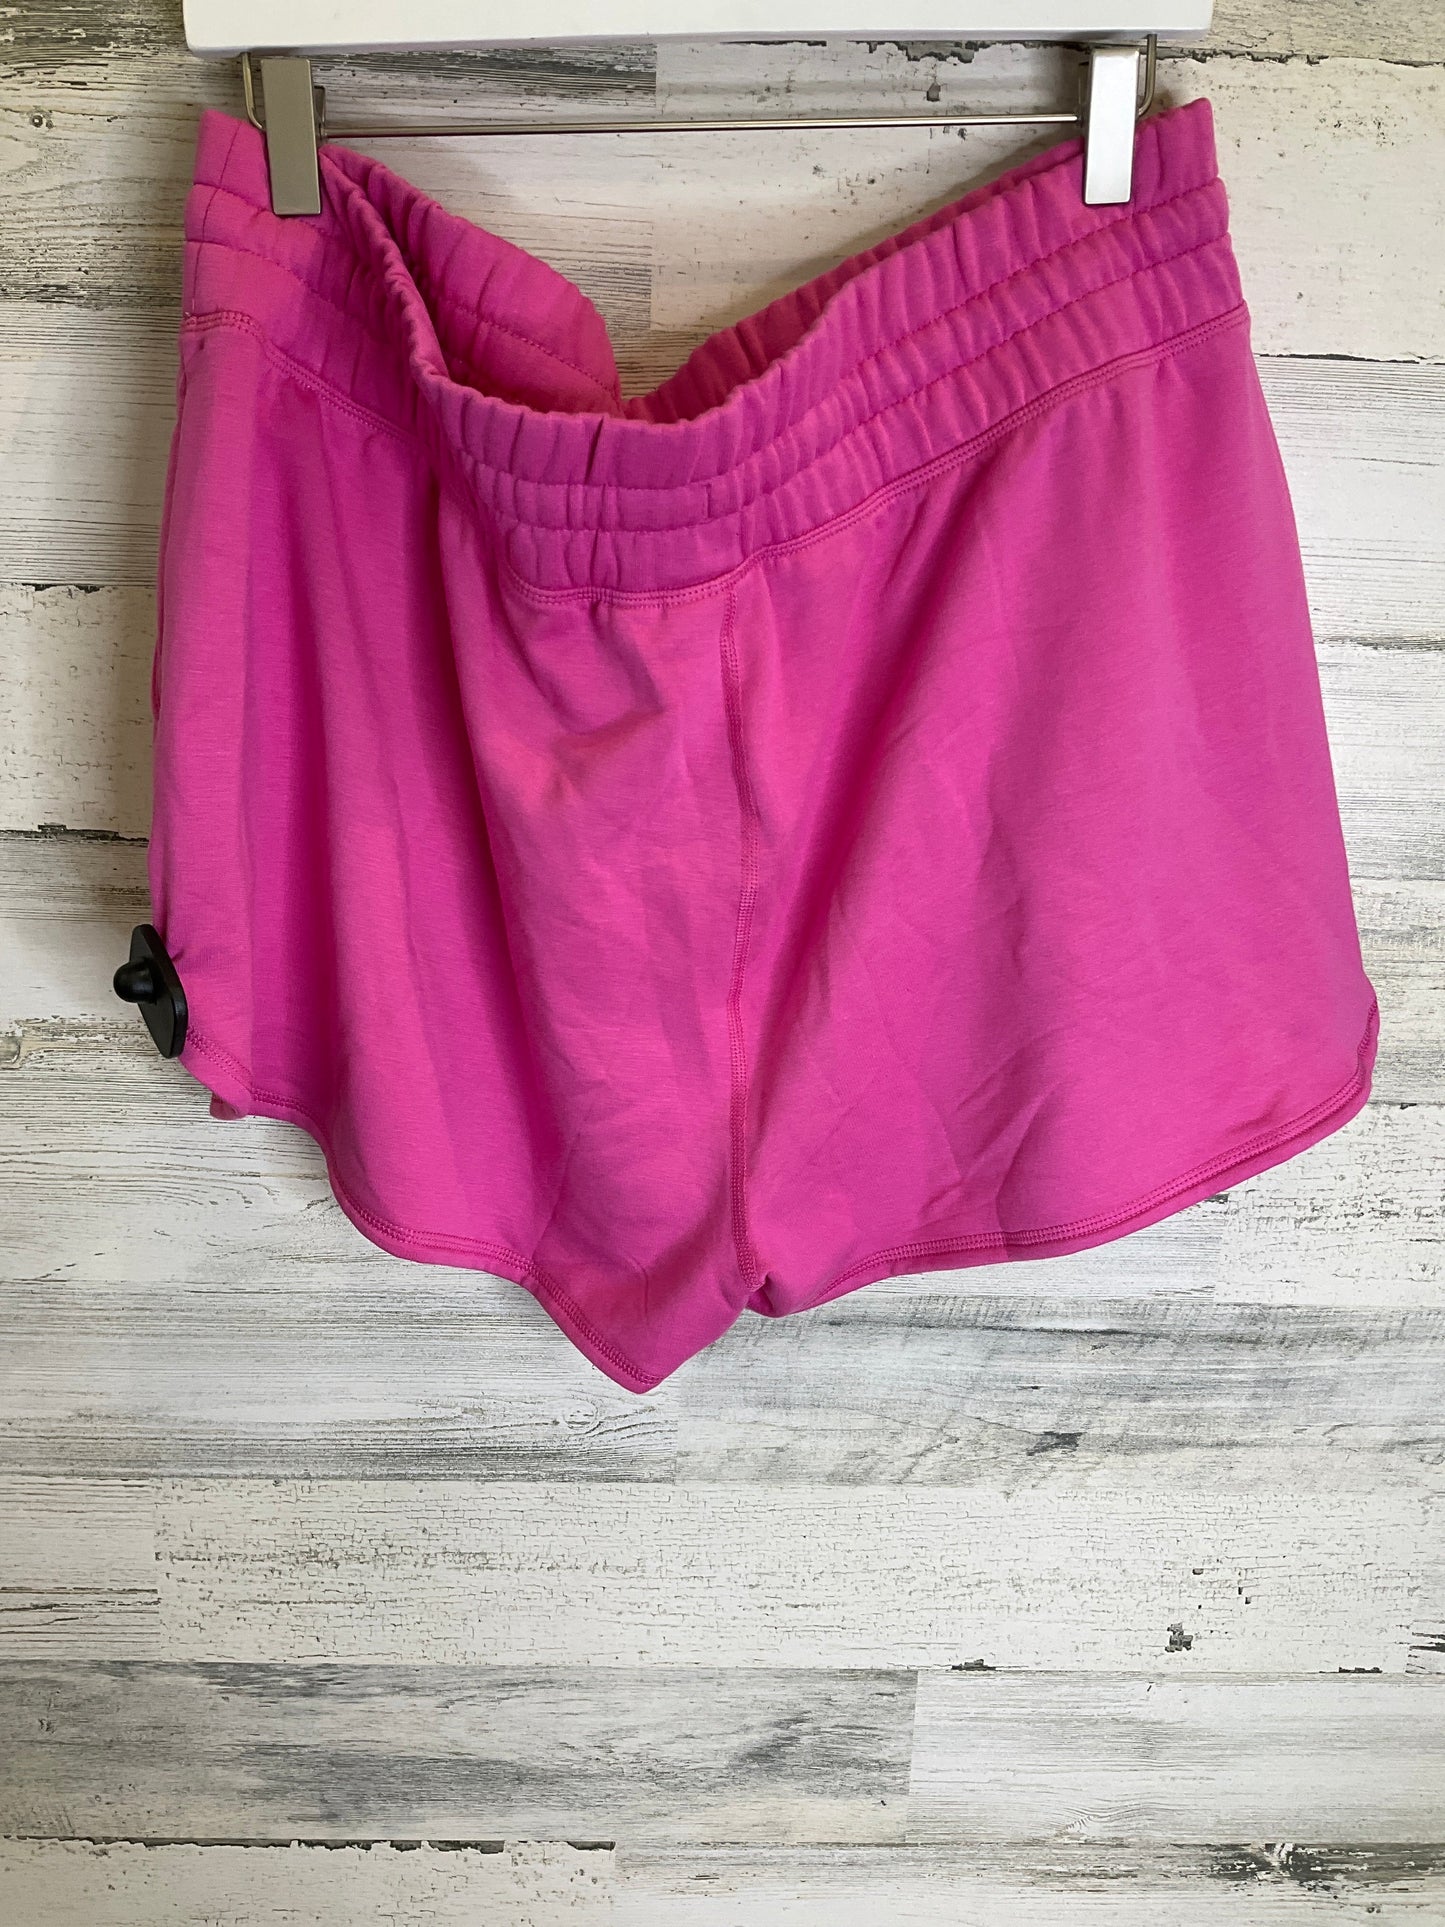 Pink Shorts Champion, Size 20